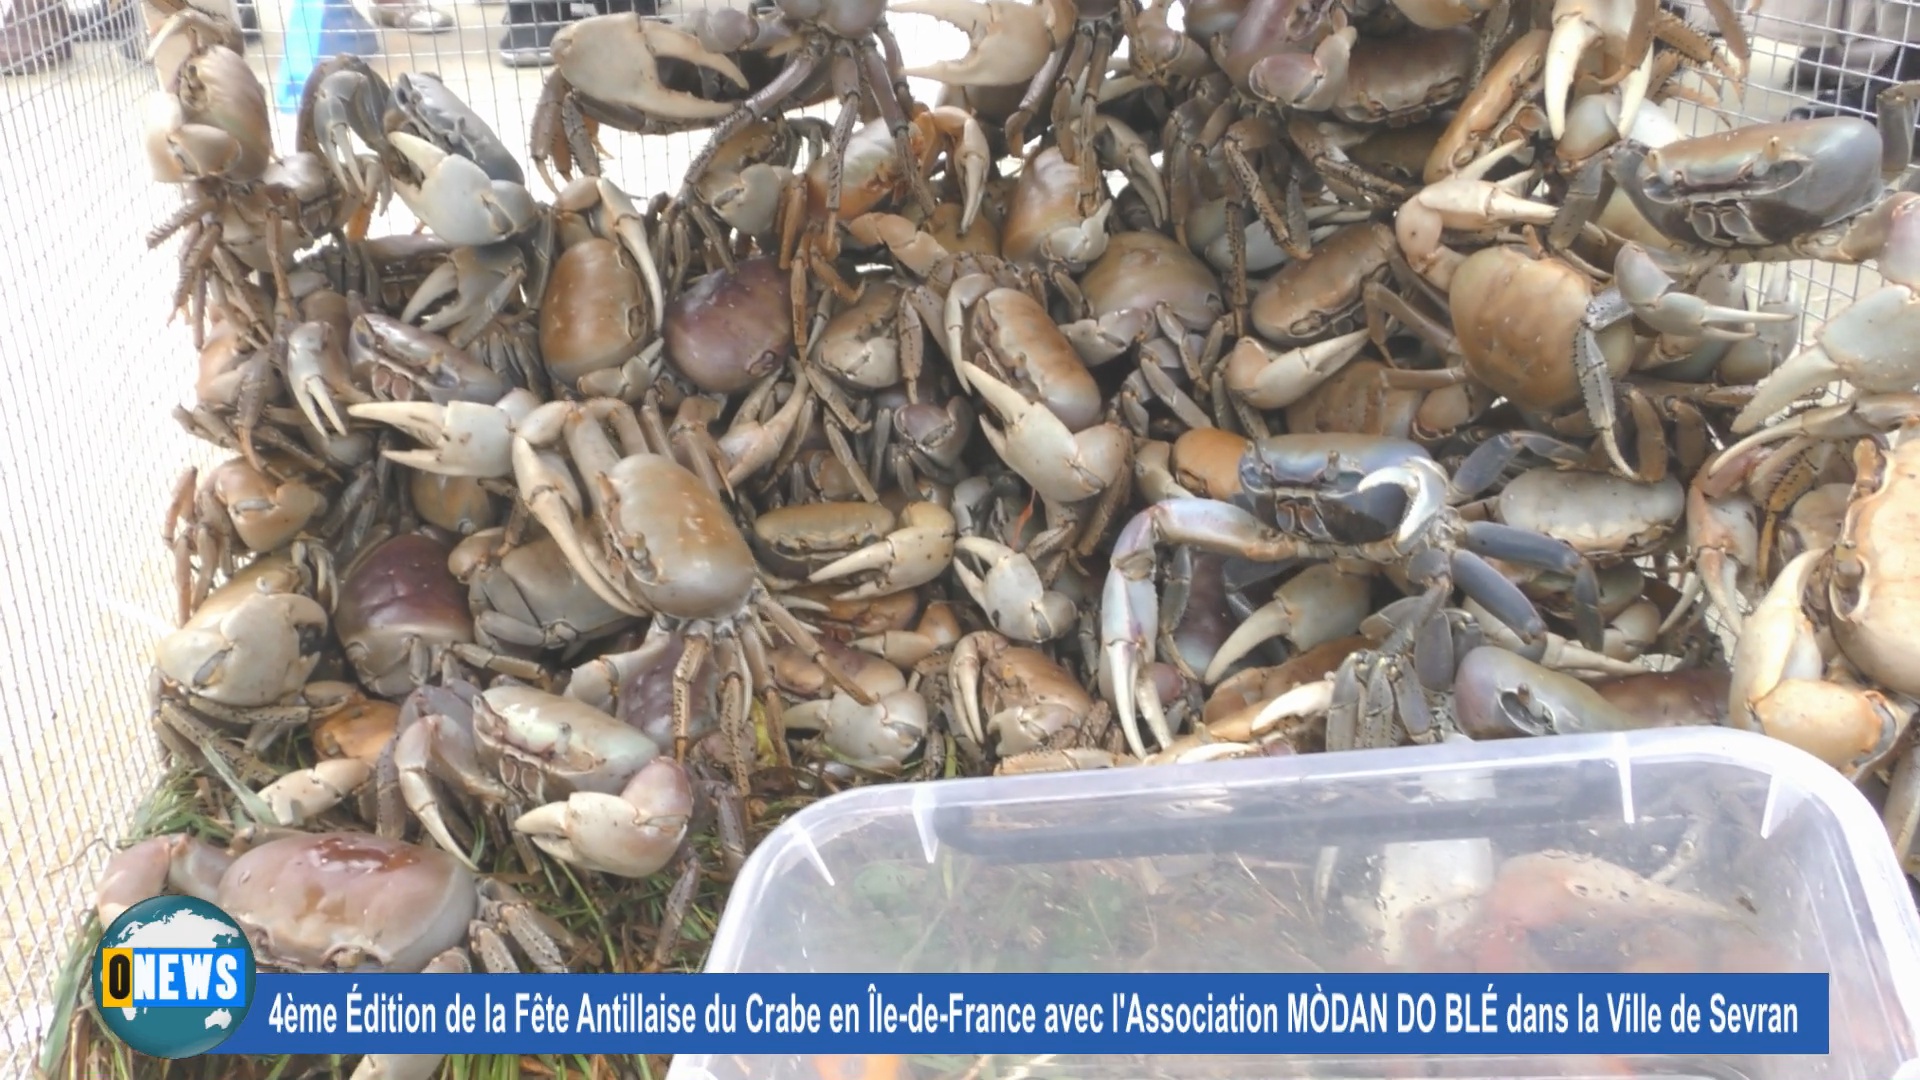 [Vidéo] Fête du crabe à Sevran avec l’Association Modan do blé